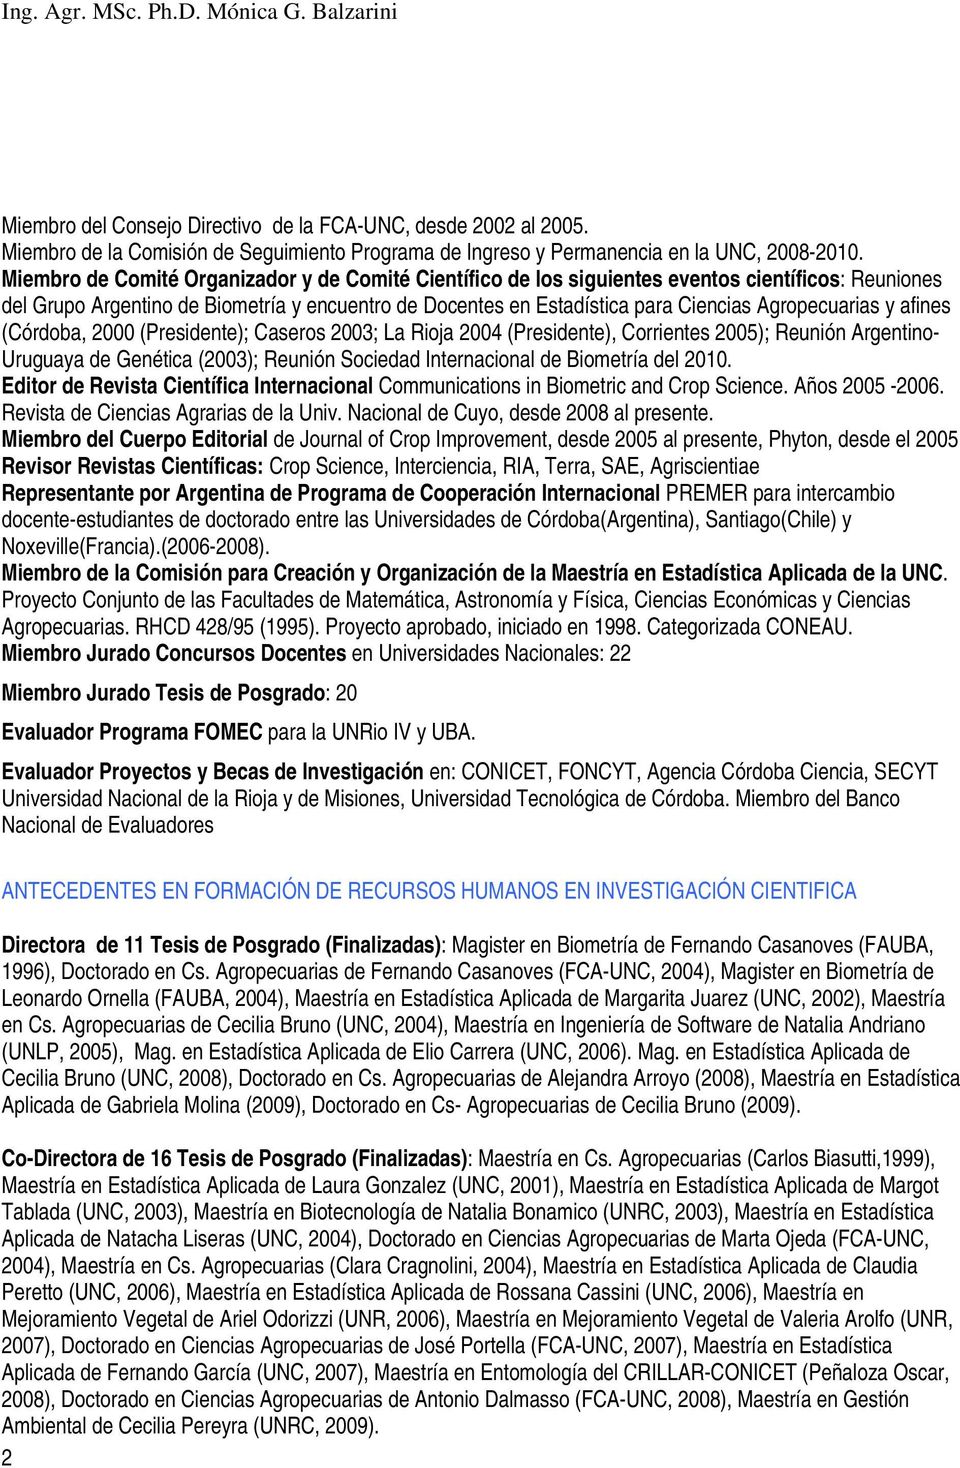 Agropecuarias y afines (Córdoba, 2000 (Presidente); Caseros 2003; La Rioja 2004 (Presidente), Corrientes 2005); Reunión Argentino- Uruguaya de Genética (2003); Reunión Sociedad Internacional de